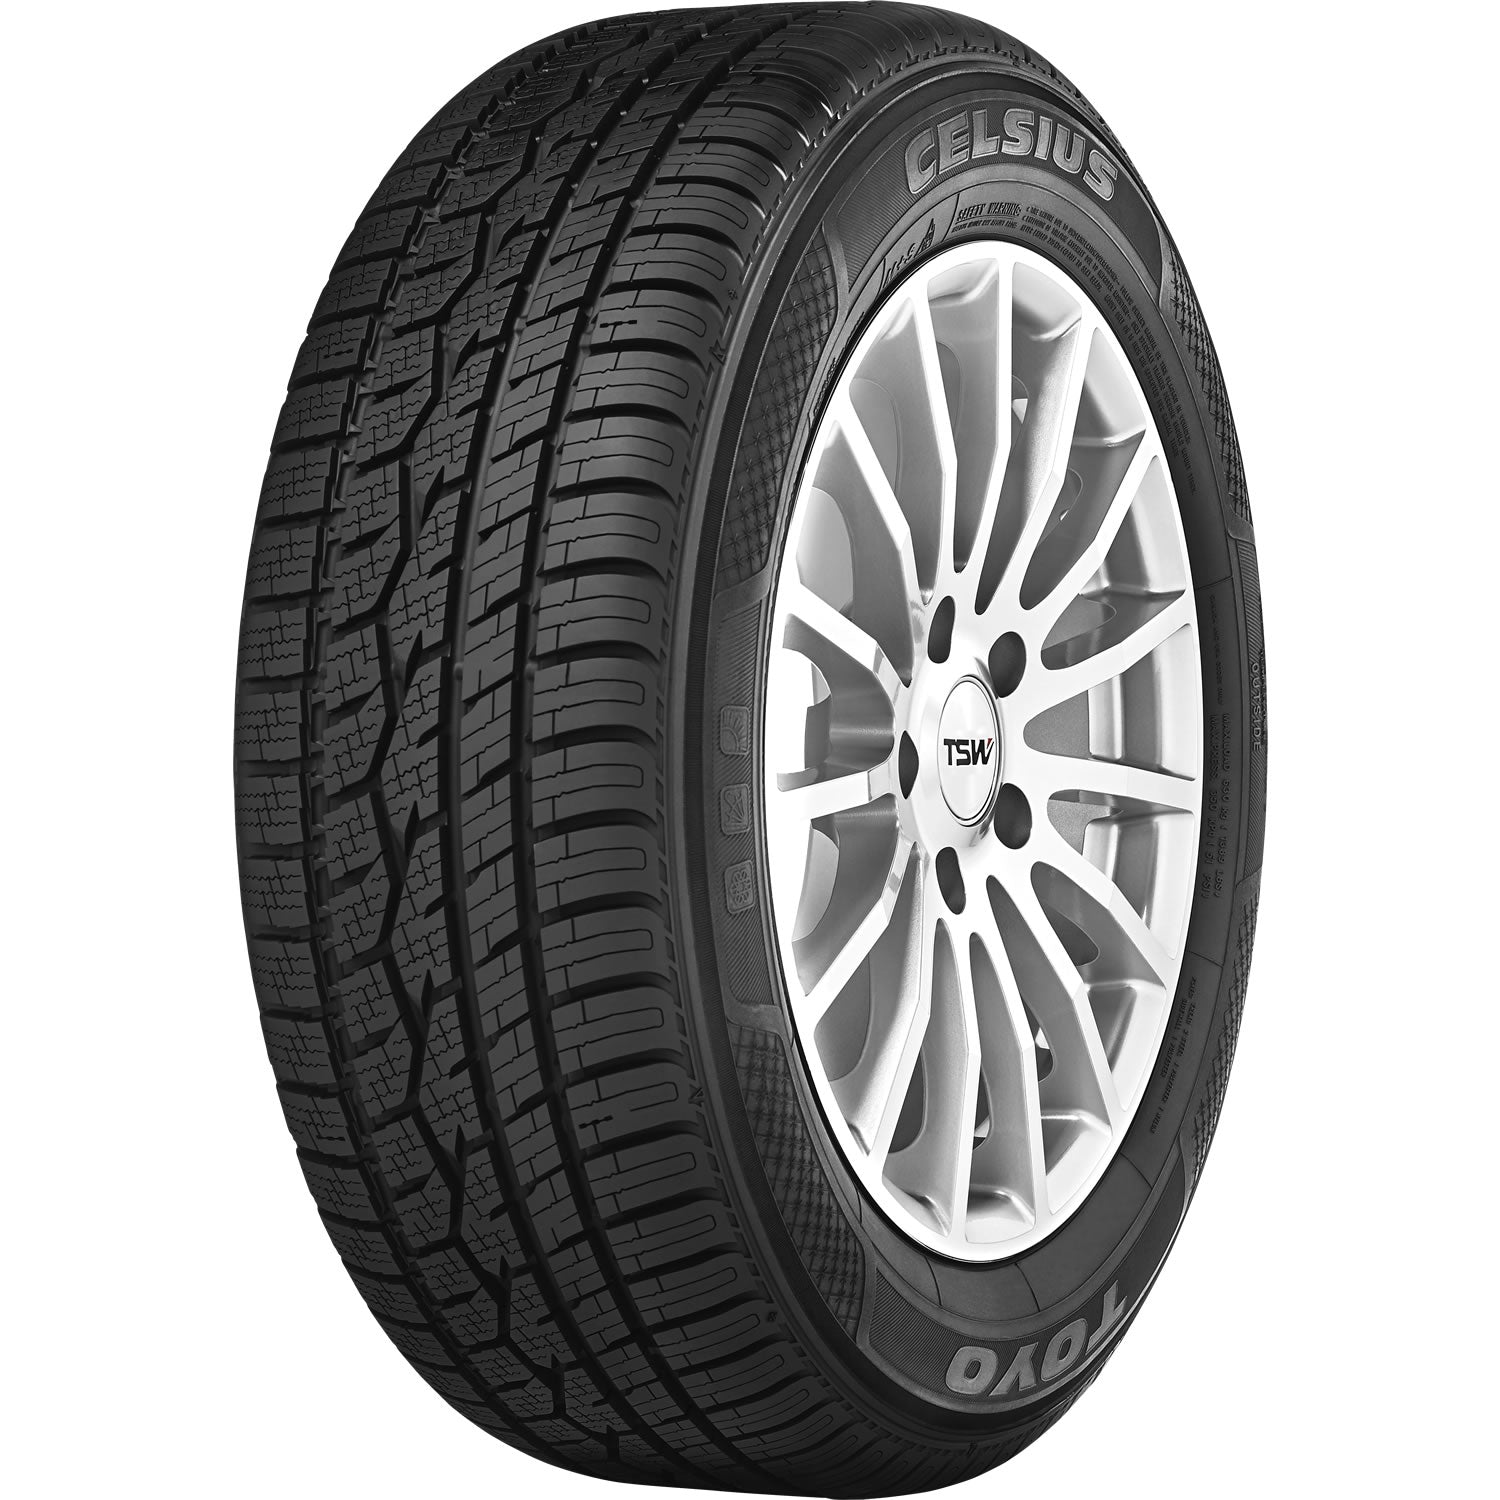 TOYO TIRES CELSIUS 225/60R16 (26.6X9R 16) Tires